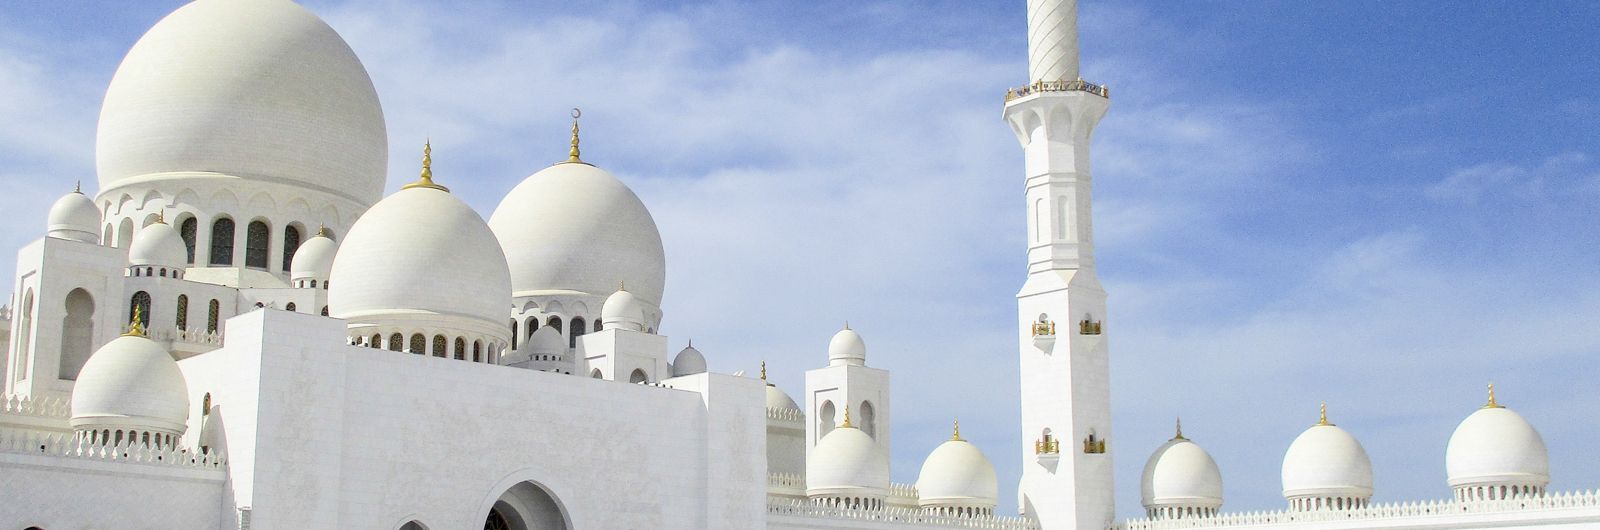 inconparable mezquita de abu dhabi